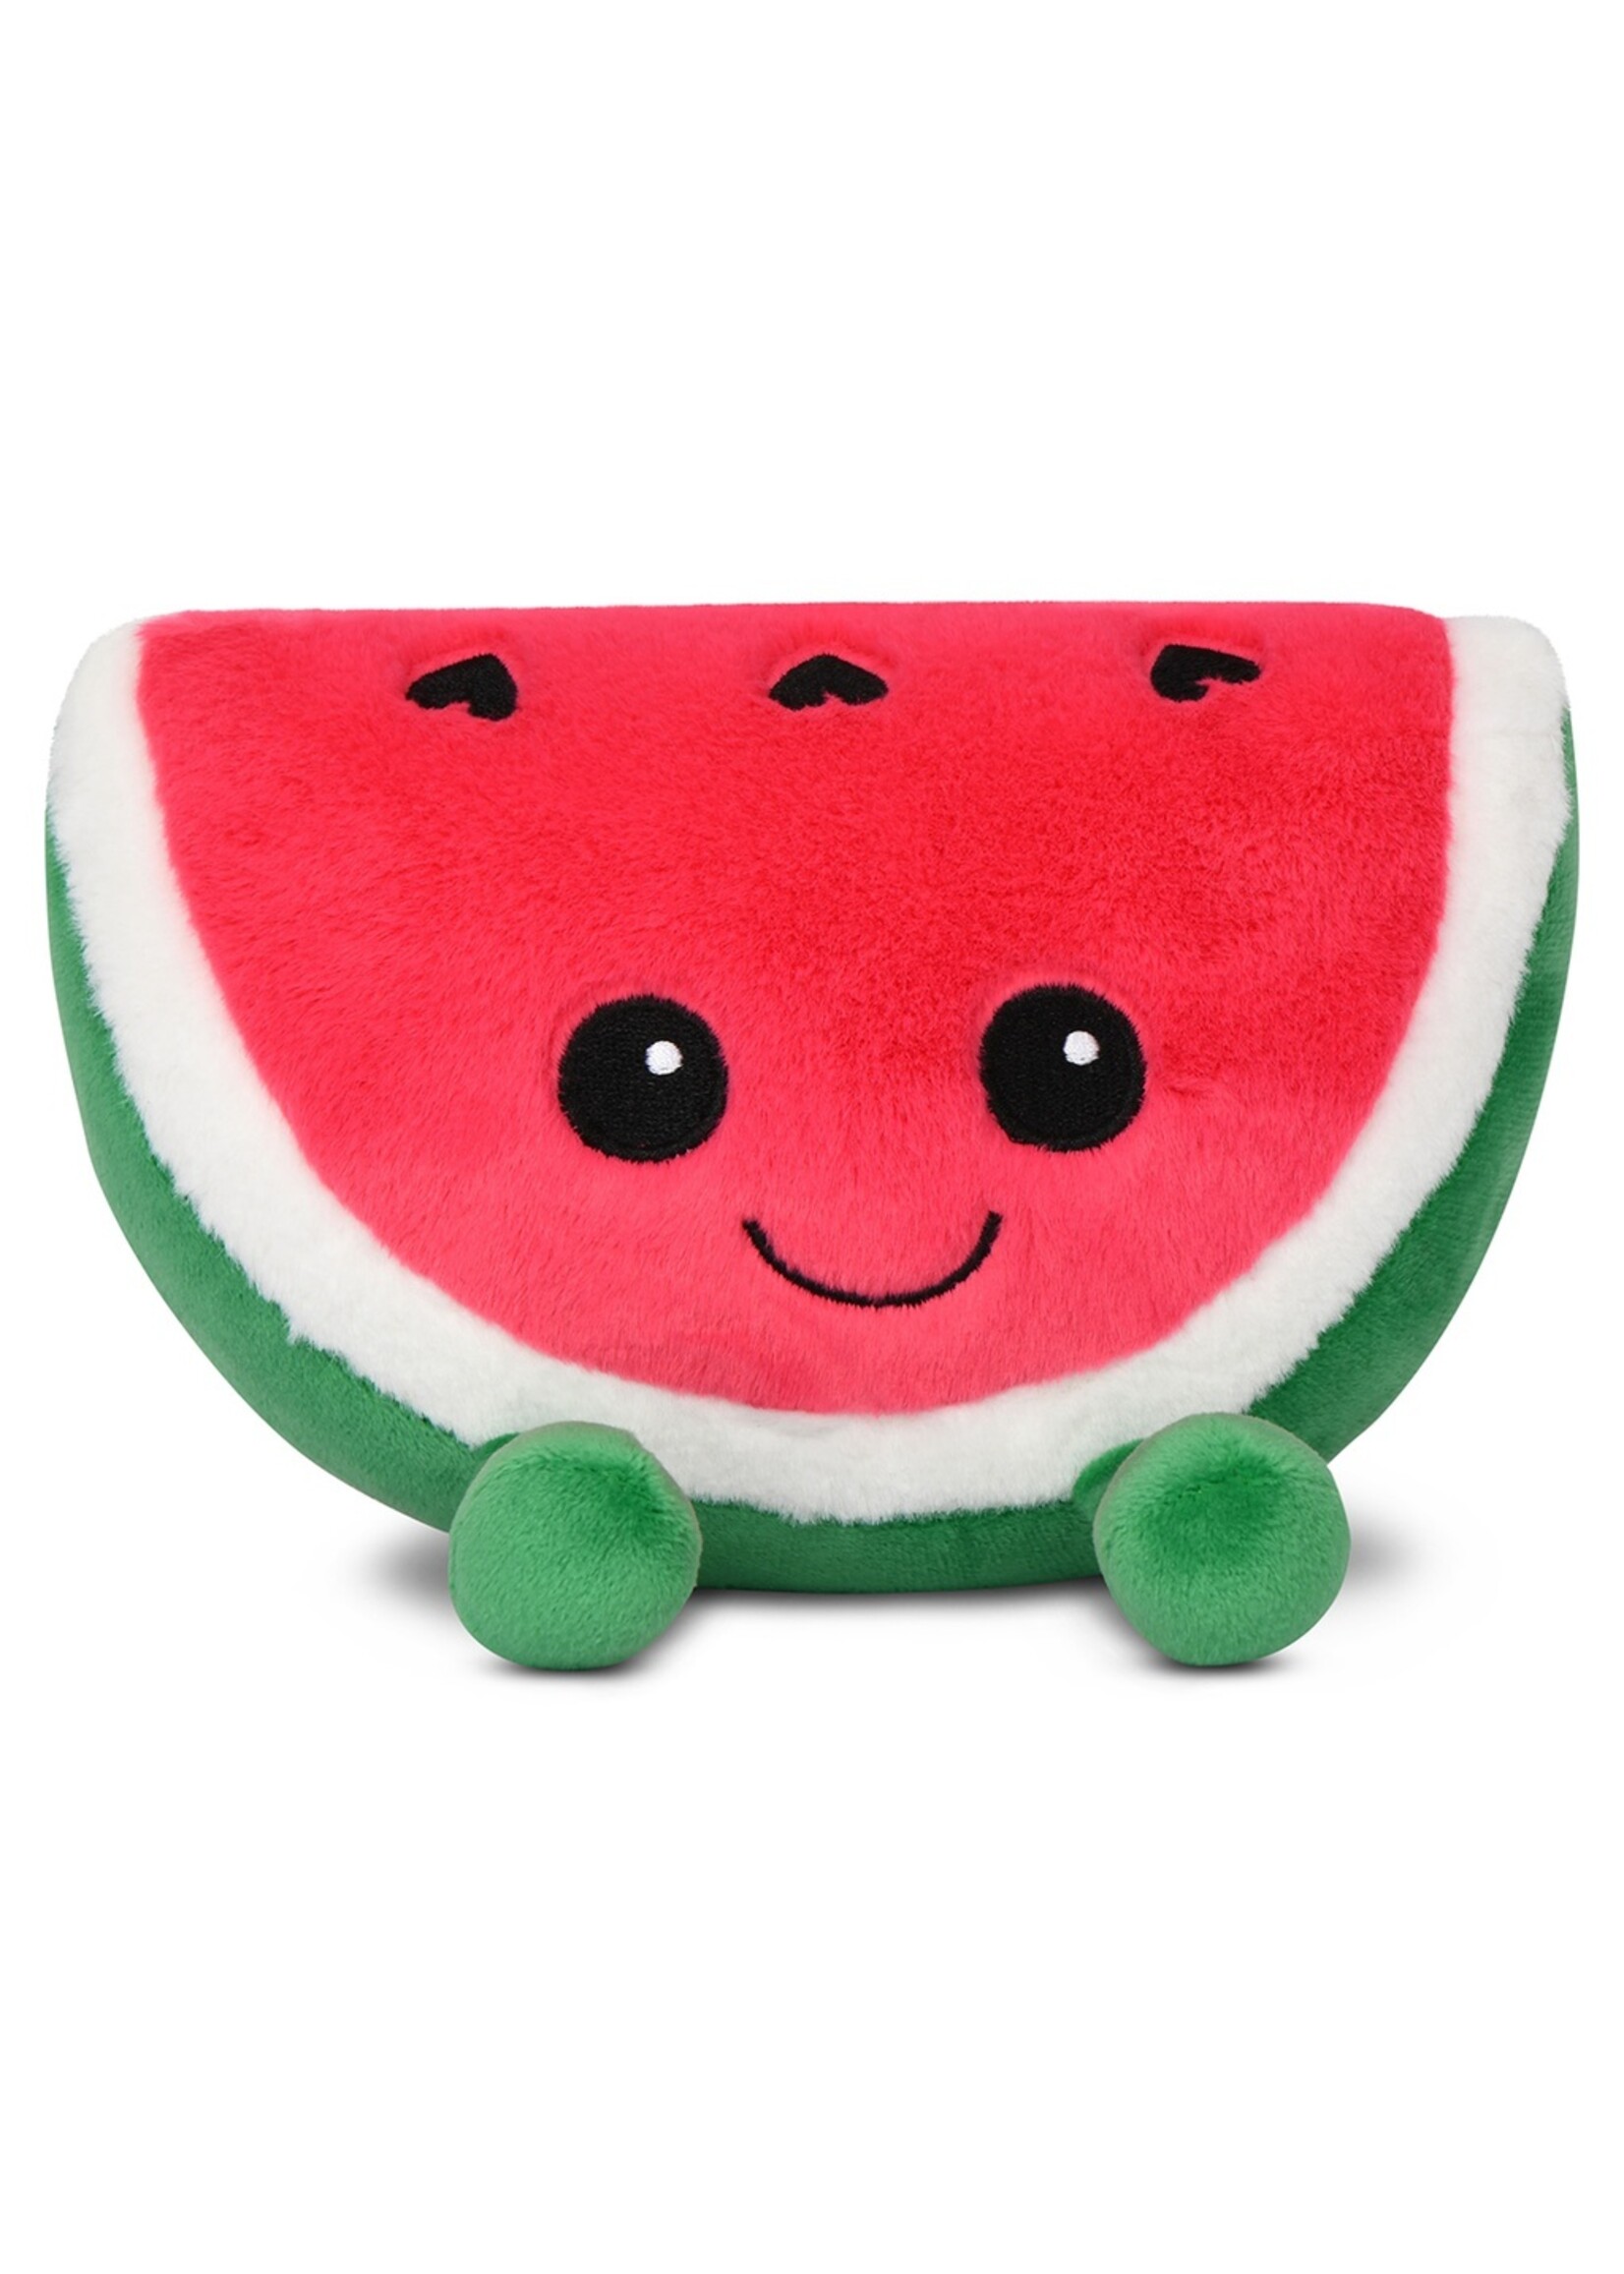 Iscream IScream Missy Melon Mini Plush